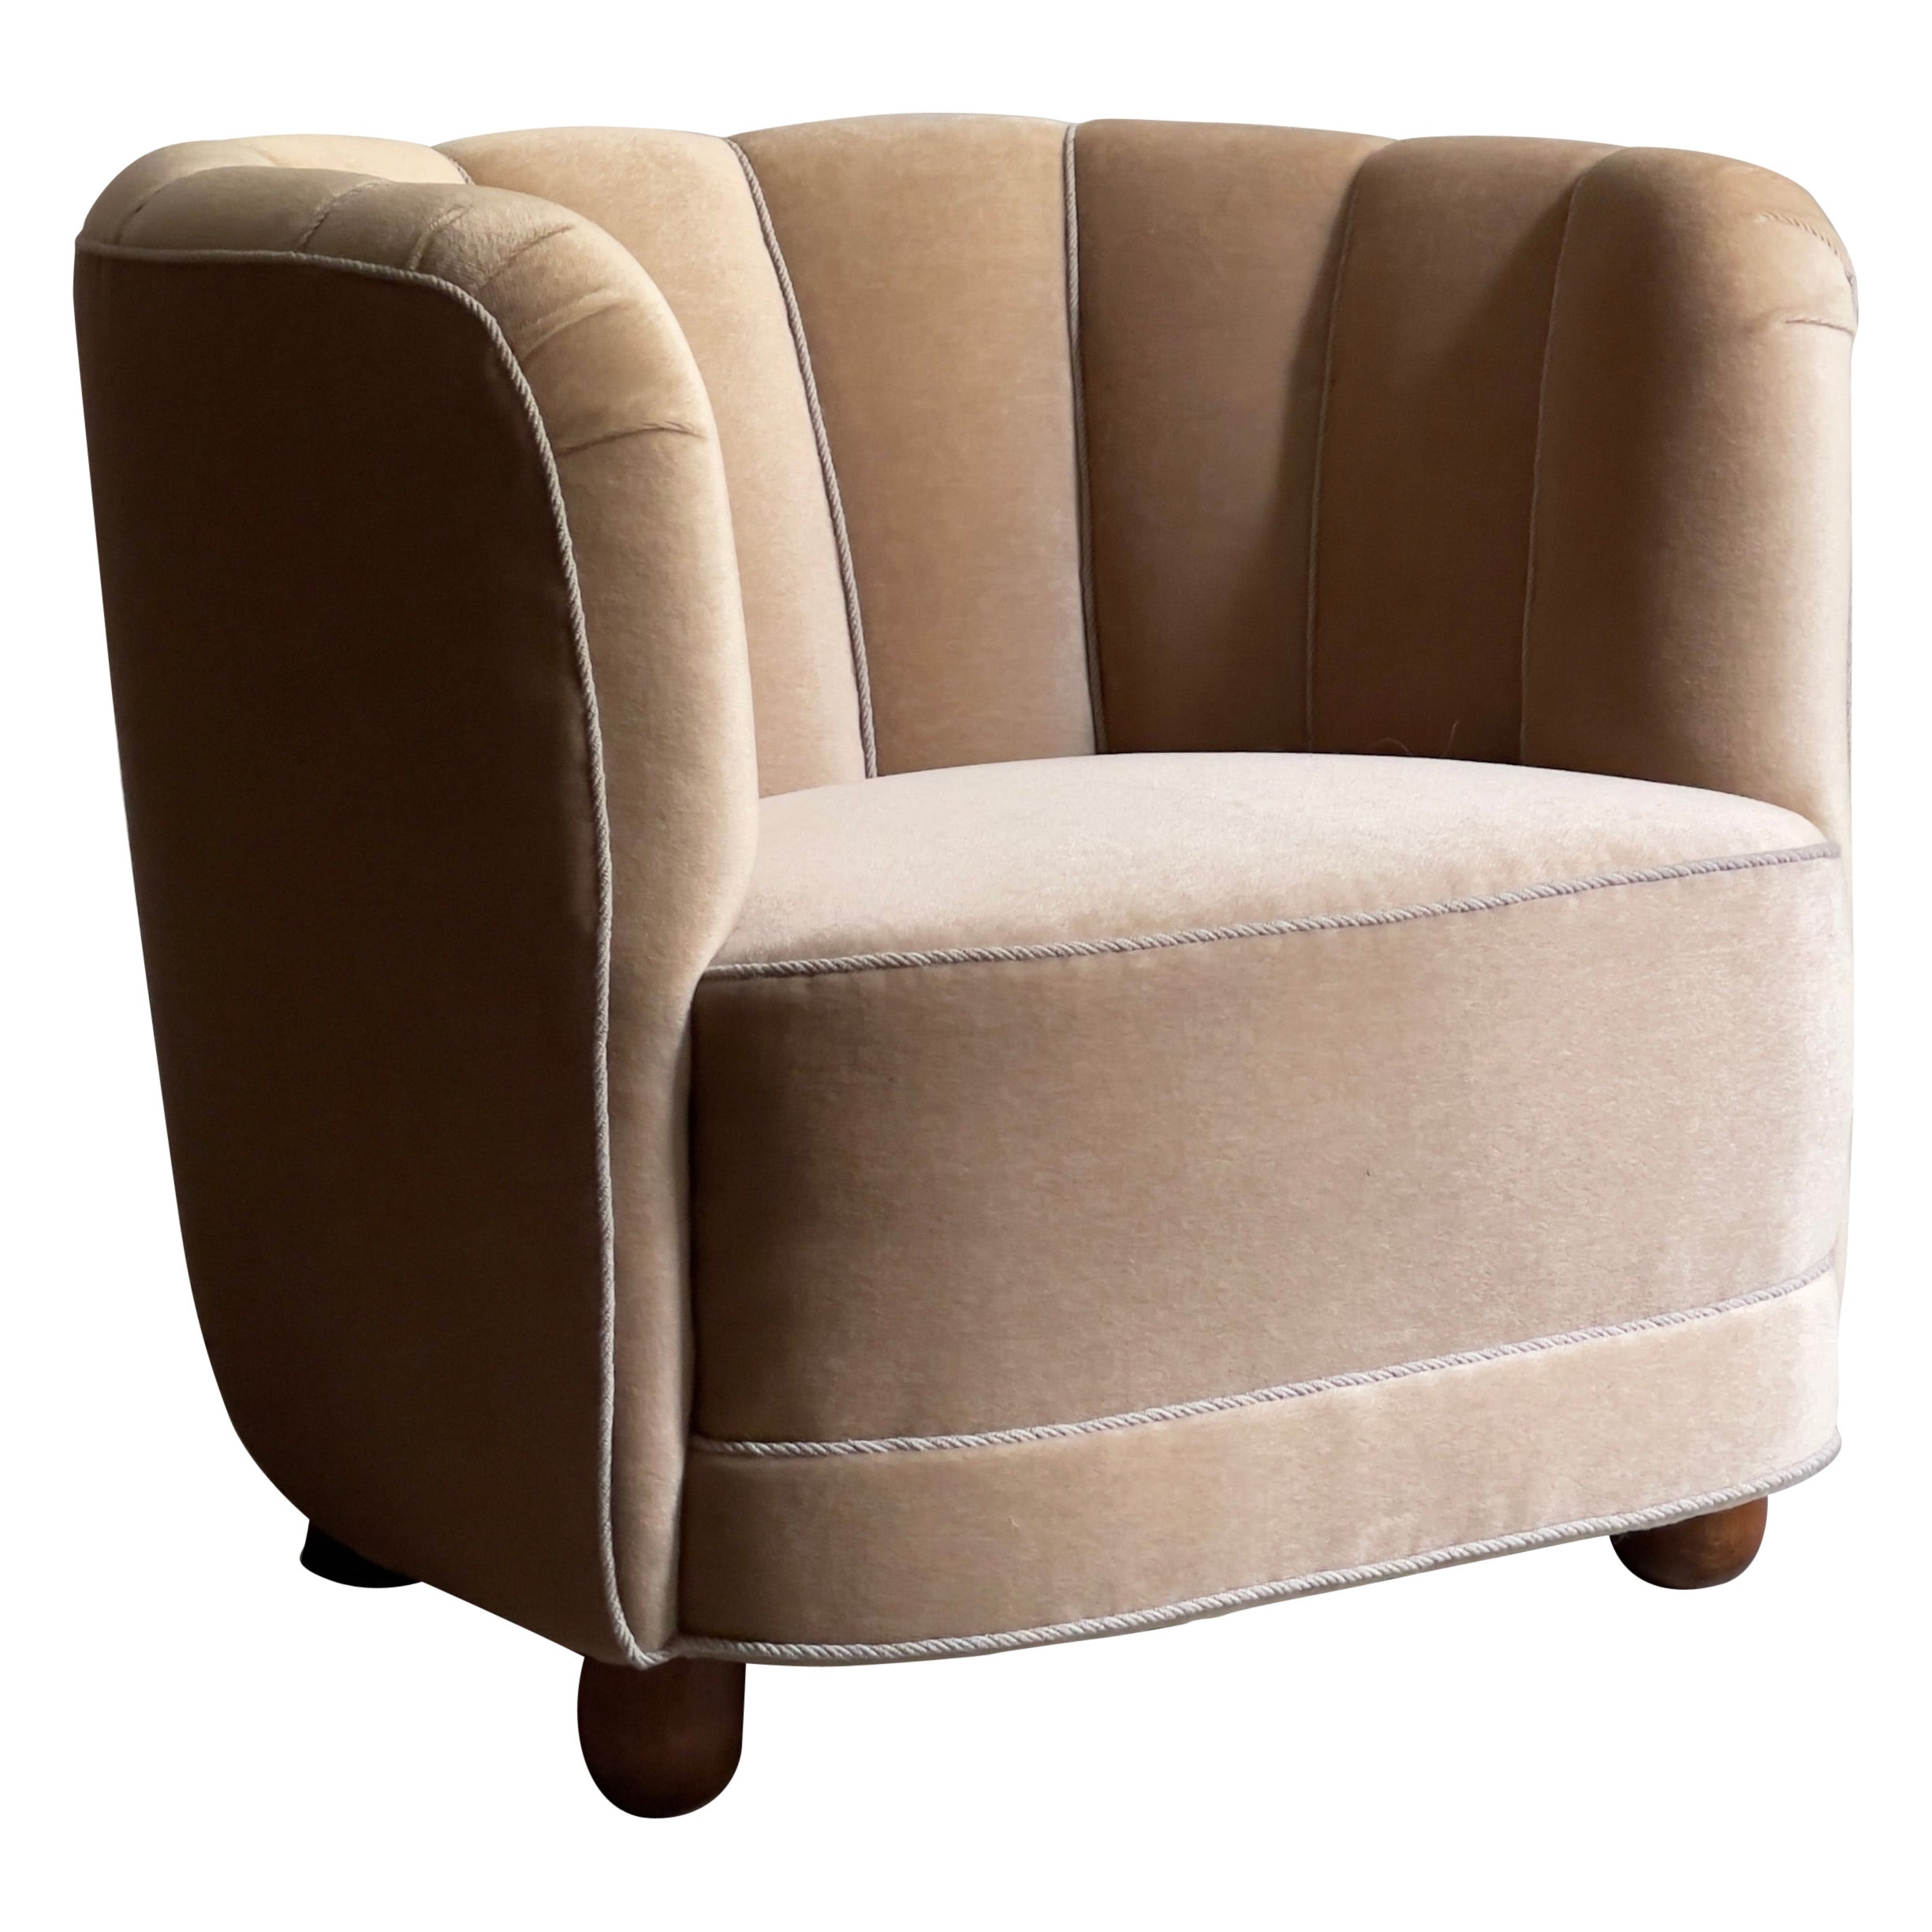 Dänischer moderner Easy Chair aus den 1930er Jahren, neu gepolstert mit Premium-Beige-Mohair